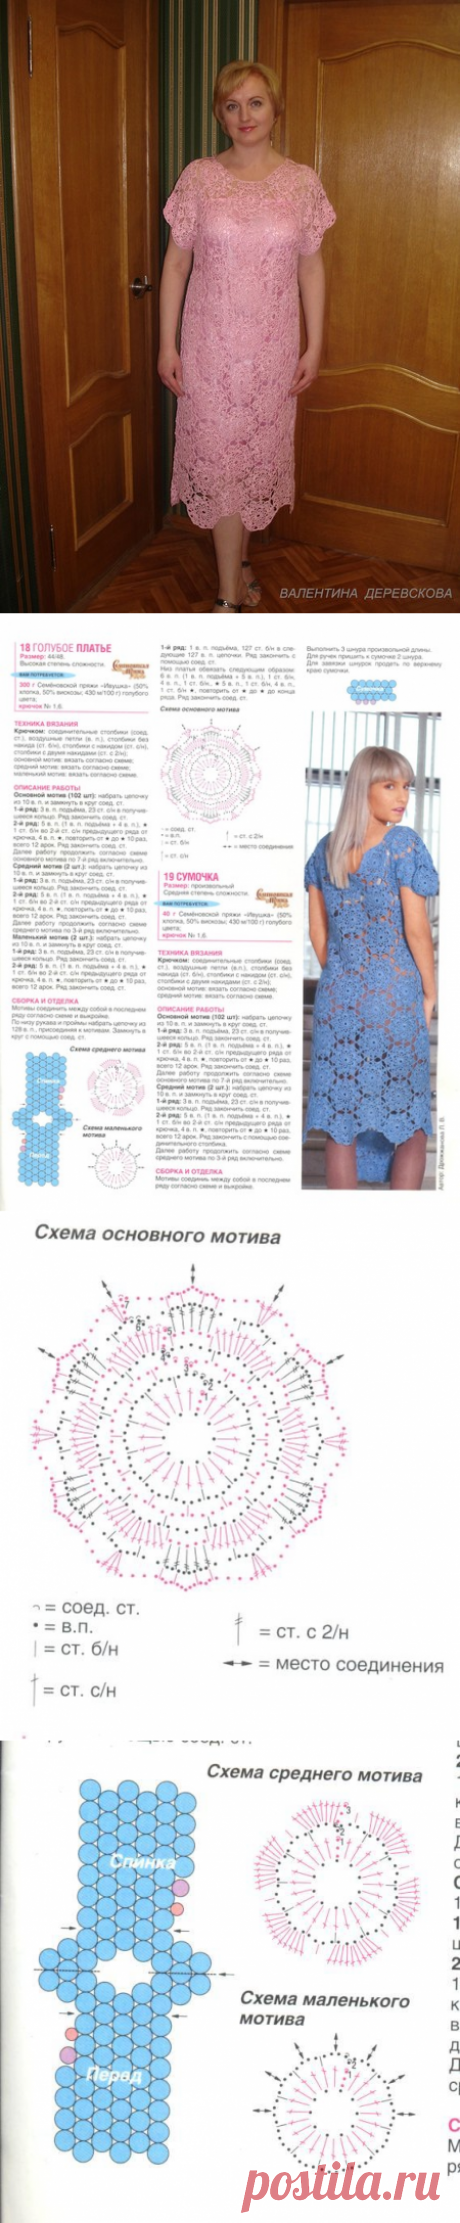 Платье крючком уже исполнено на mail.ru.